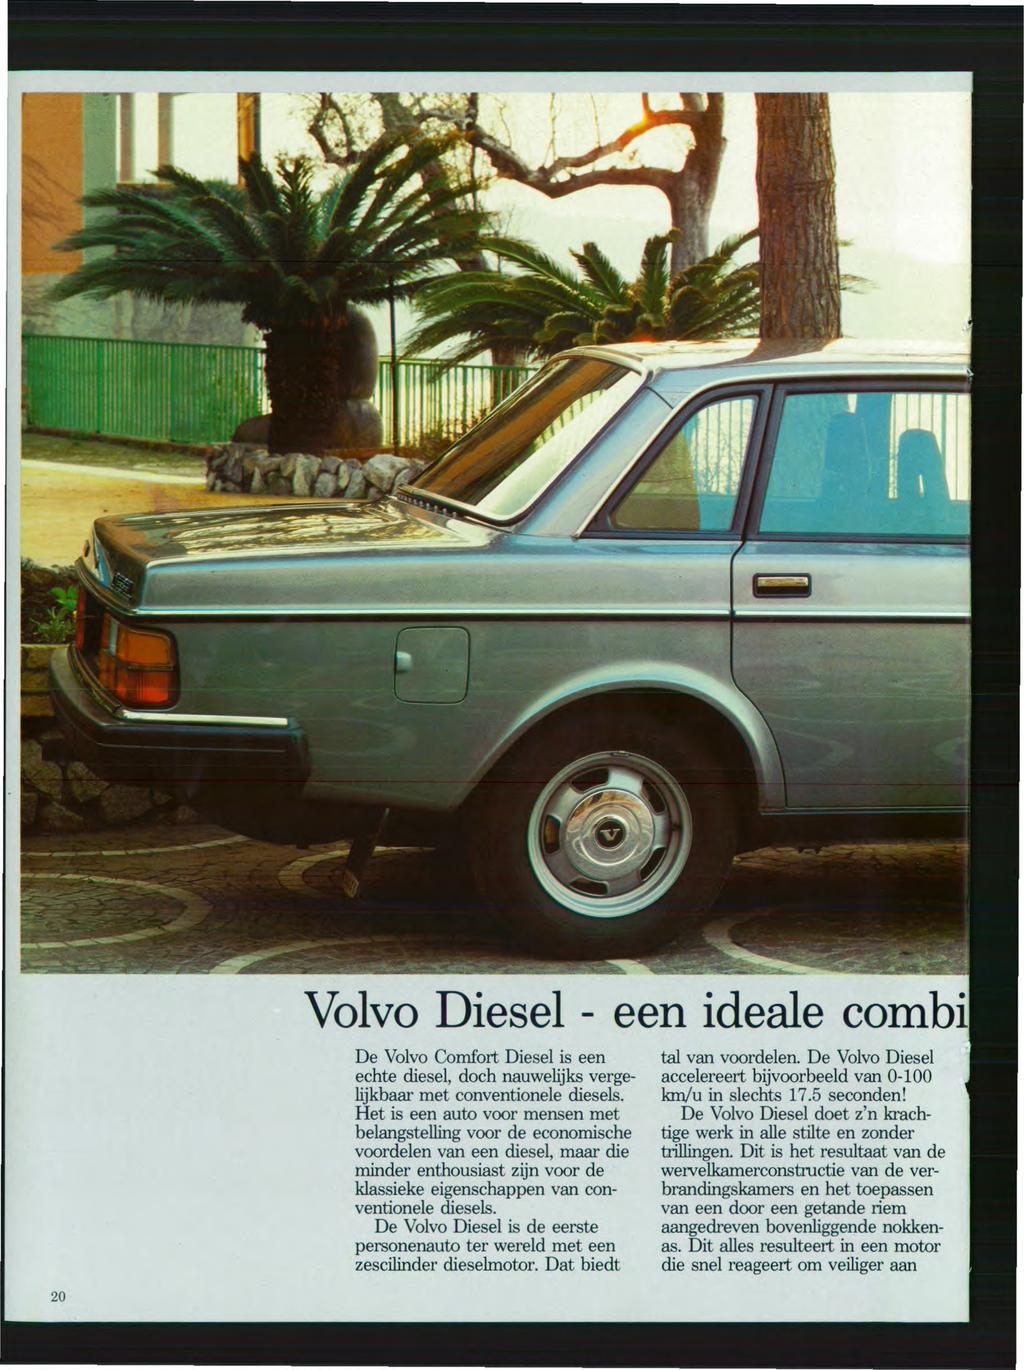 Volvo Diesel - een ideale combi De Volvo Comfort Diesel is een echte diesel, doch nauwelijks vergelijkbaar met conventionele diesels.